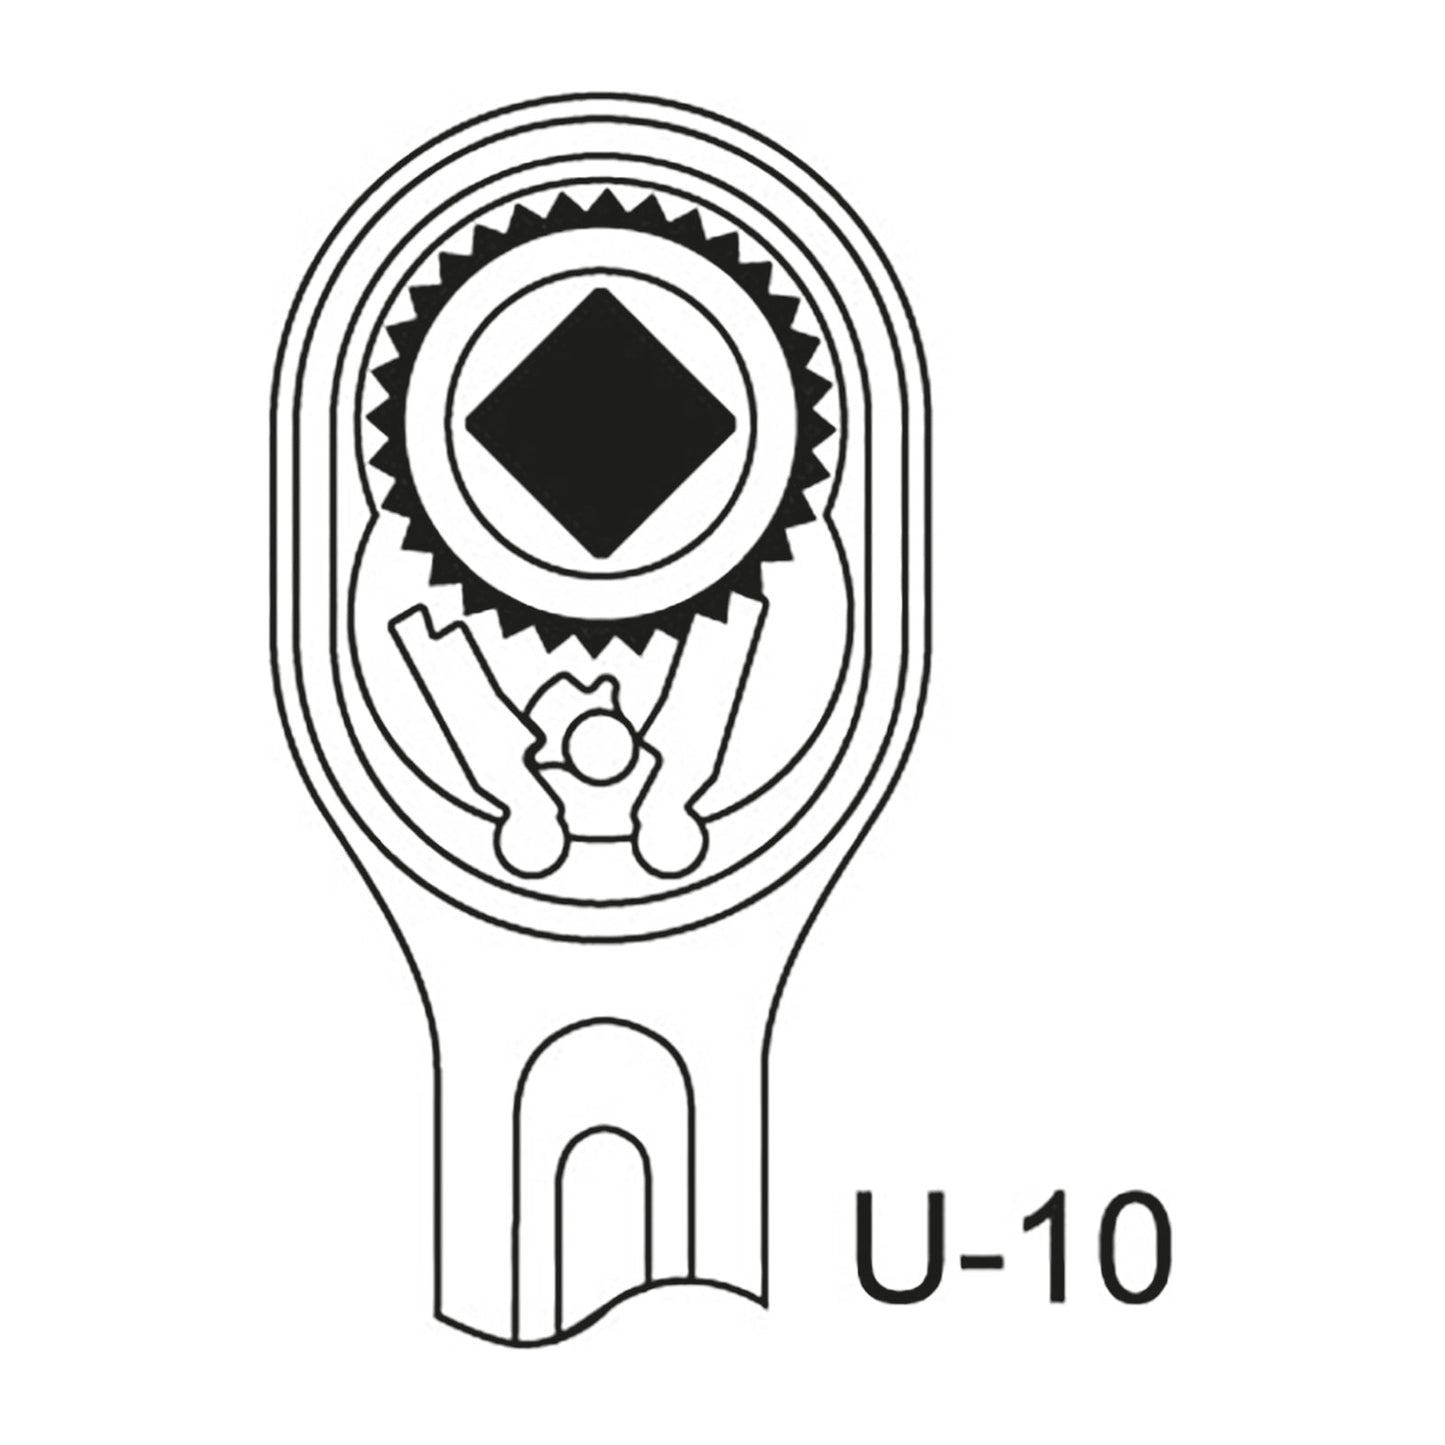 GEDORE 2193 U-10 - Carraca 1", U-10 (6180550)